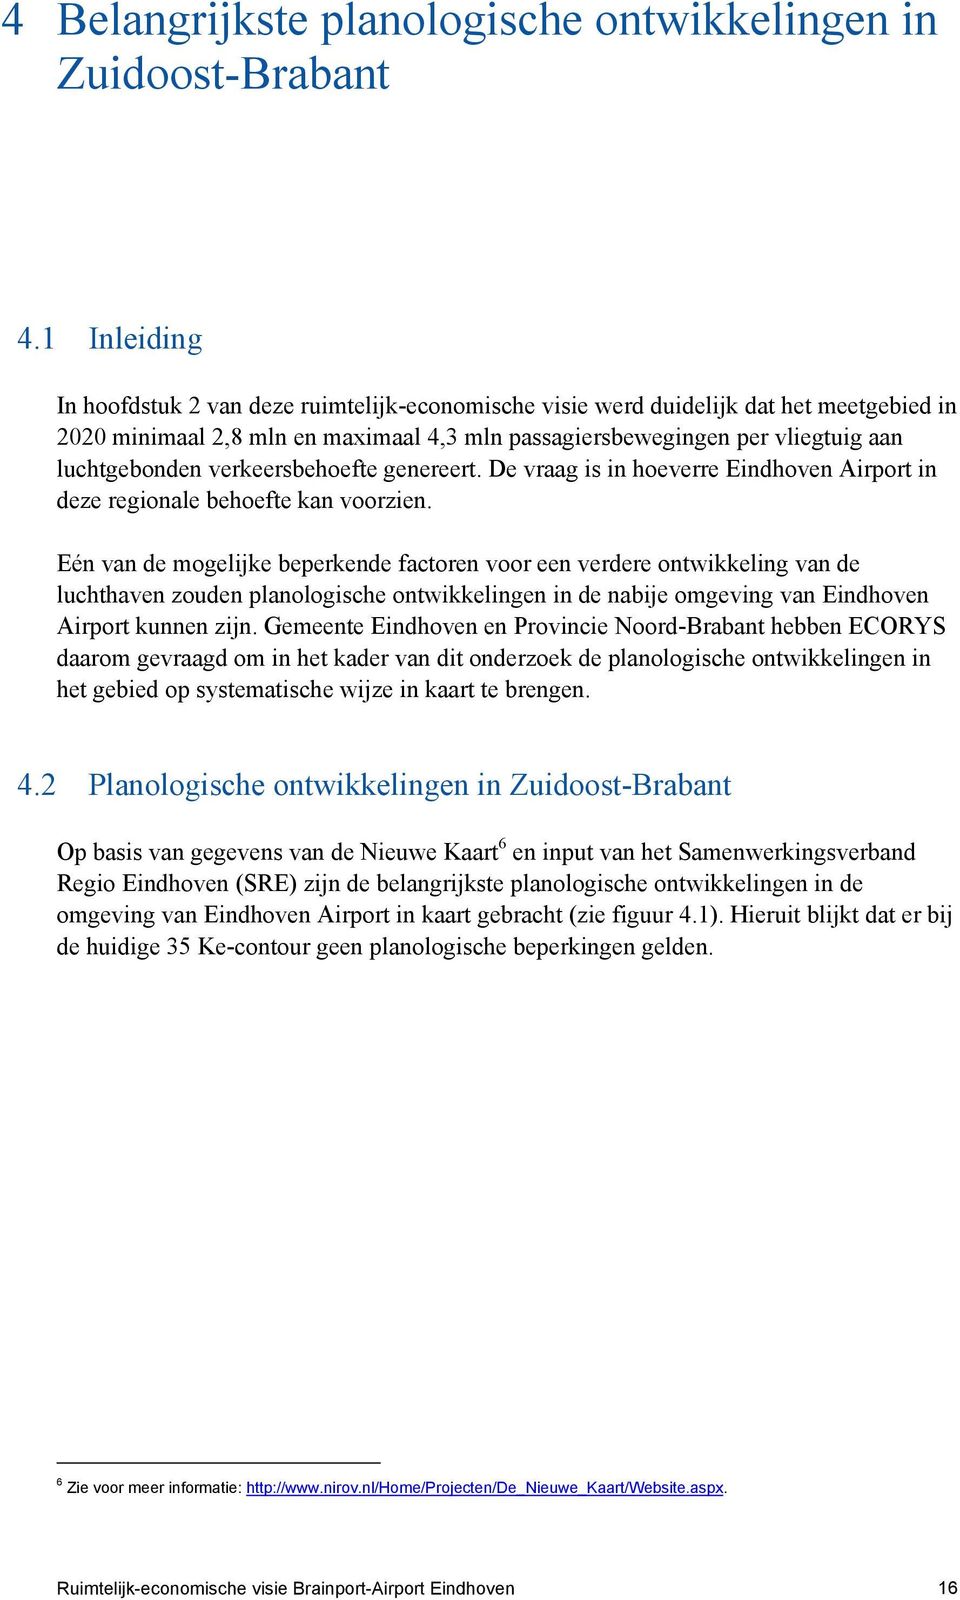 verkeersbehoefte genereert. De vraag is in hoeverre Eindhoven Airport in deze regionale behoefte kan voorzien.